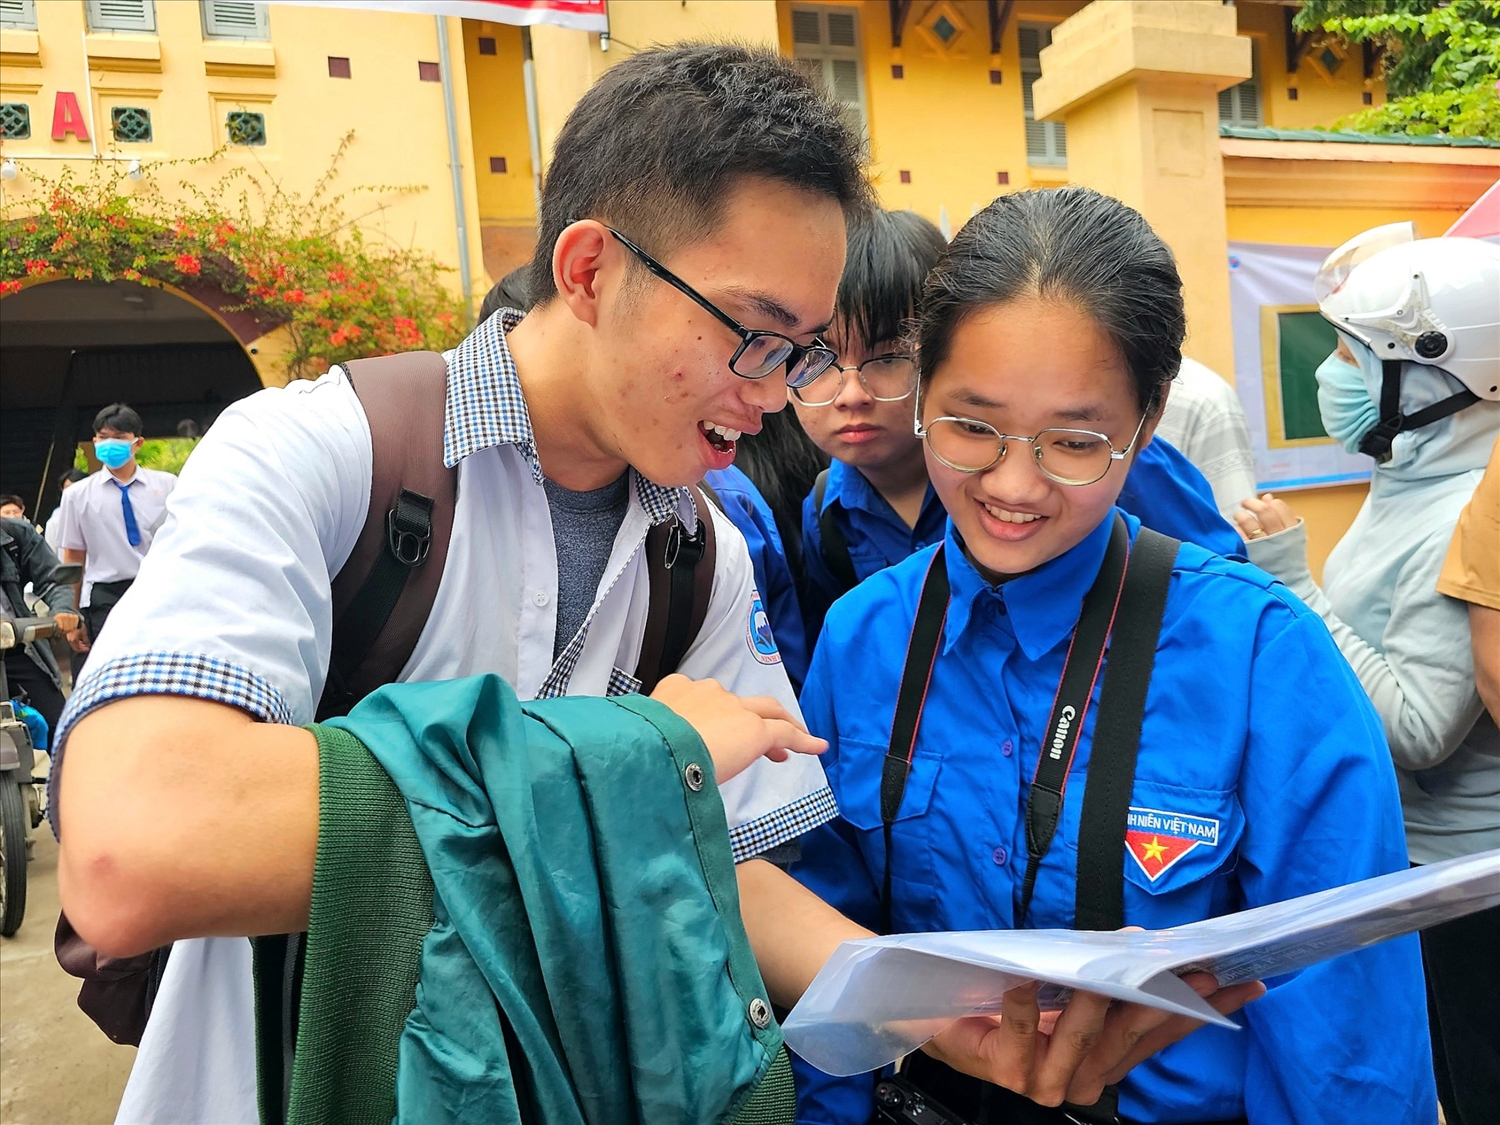 Các thí sinh tại điểm thi Trường THPT Châu Văn Liêm, quận Ninh Kiều, TP Cần Thơ phấn khởi khi có đề thi “ Trúng tủ”. Theo các em đề thi sáng nay vừa sức cho học sinh trung bình khá.